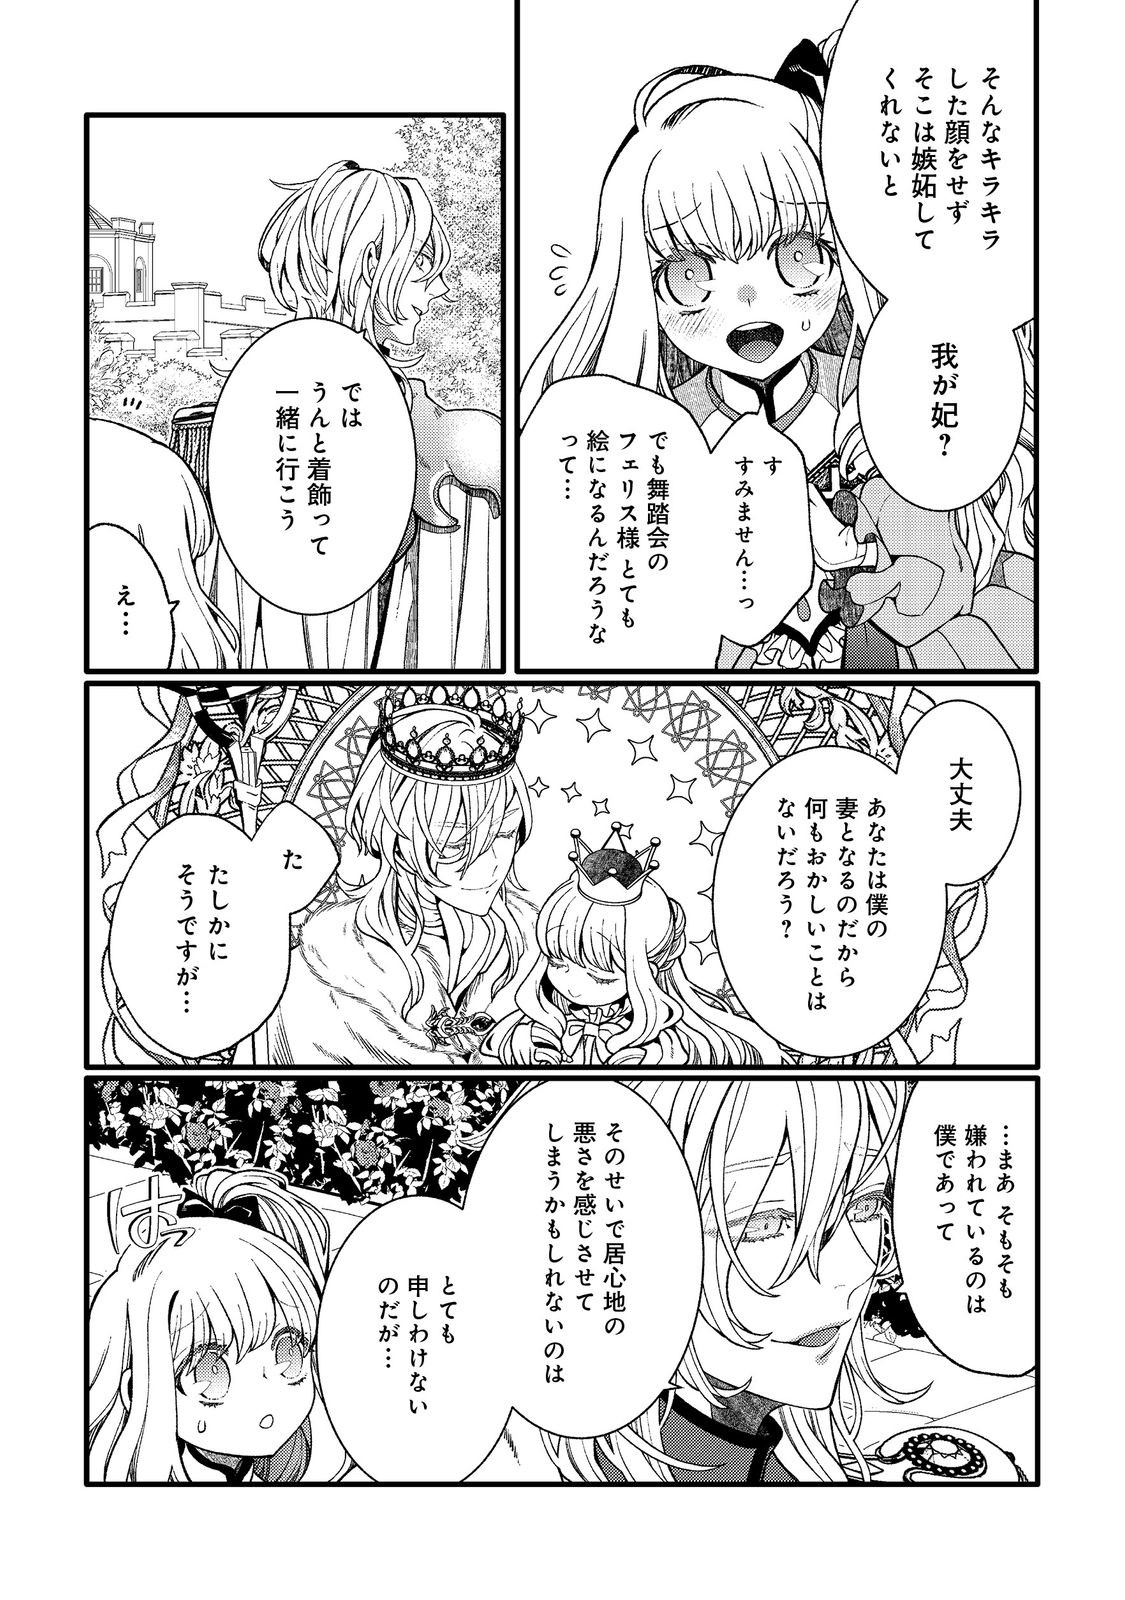 5-sai de, Ryuu no Ou Otoutou Denka no Hanayoume ni Narimashita - Chapter 2.1 - Page 8